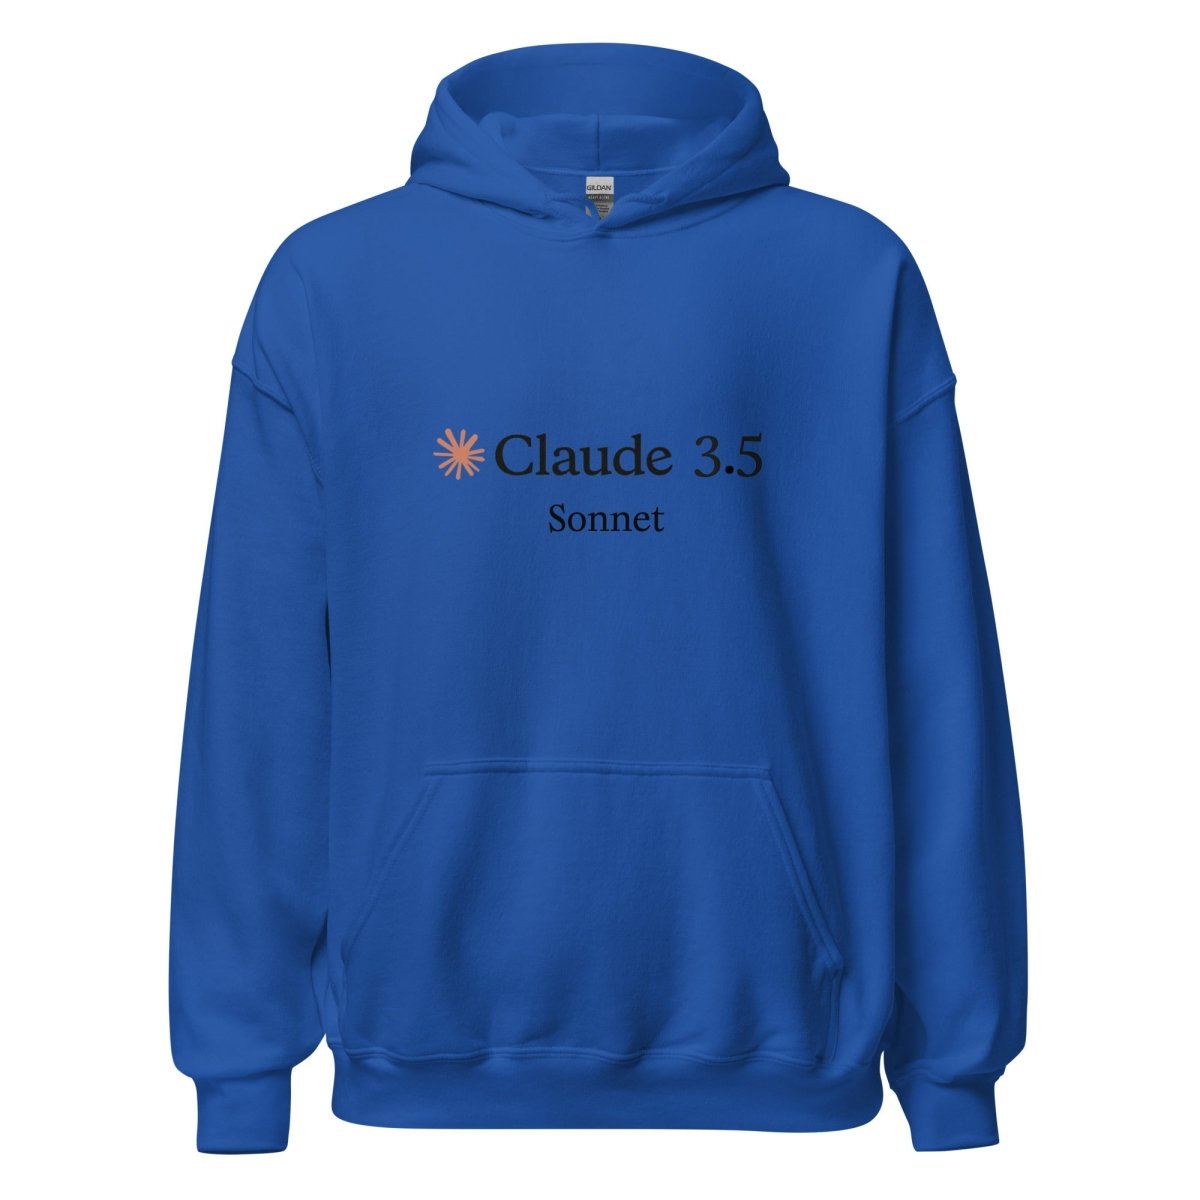 Claude 3.5 Sonnet Hoodie (unisex) - Royal - AI Store